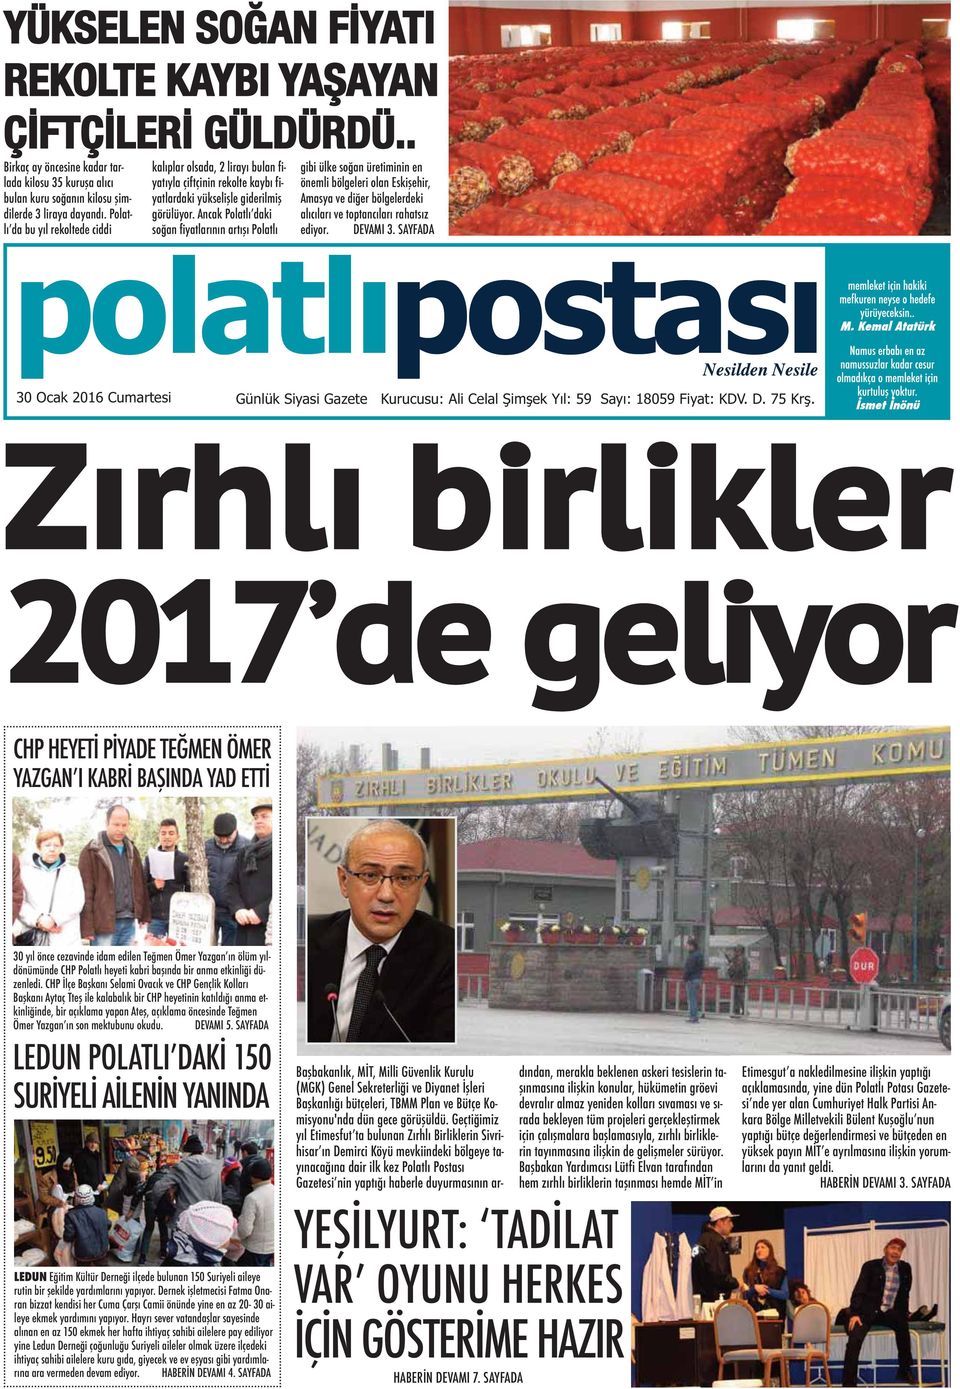 Ancak Polatlı daki soğan fiyatlarının artışı Polatlı gibi ülke soğan üretiminin en önemli bölgeleri olan Eskişehir, Amasya ve diğer bölgelerdeki alıcıları ve toptancıları rahatsız ediyor. DEVAMI 3.